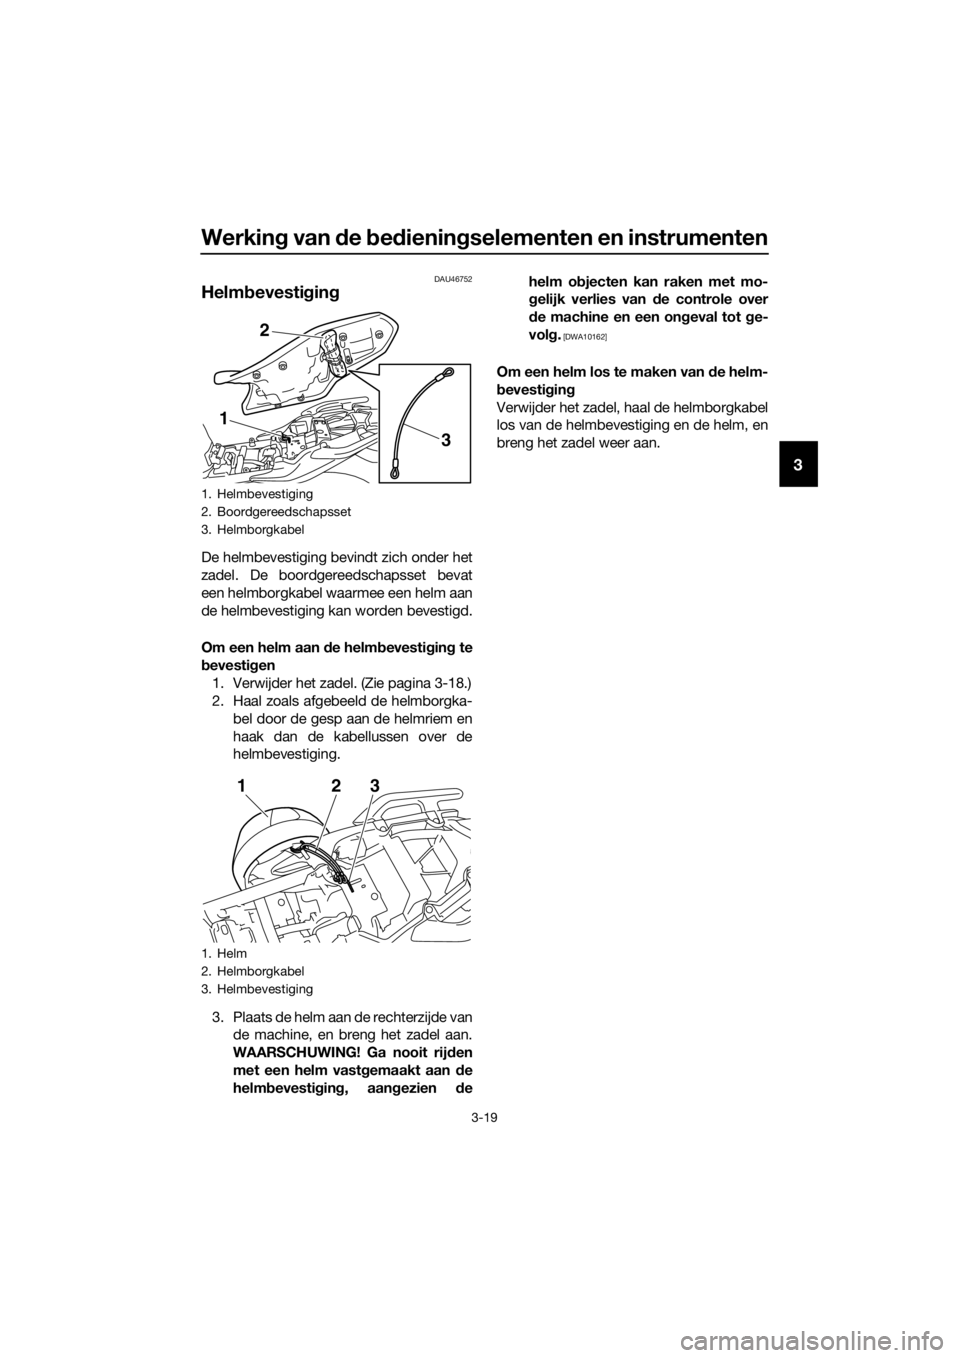 YAMAHA XJ6F 2016  Instructieboekje (in Dutch) Werking van d e bed iening selementen en instrumenten
3-19
3
DAU46752
Helmb evestigin g
De helmbevestiging bevindt zich onder het
zadel. De boordgereedschapsset bevat
een helmborgkabel waarmee een hel